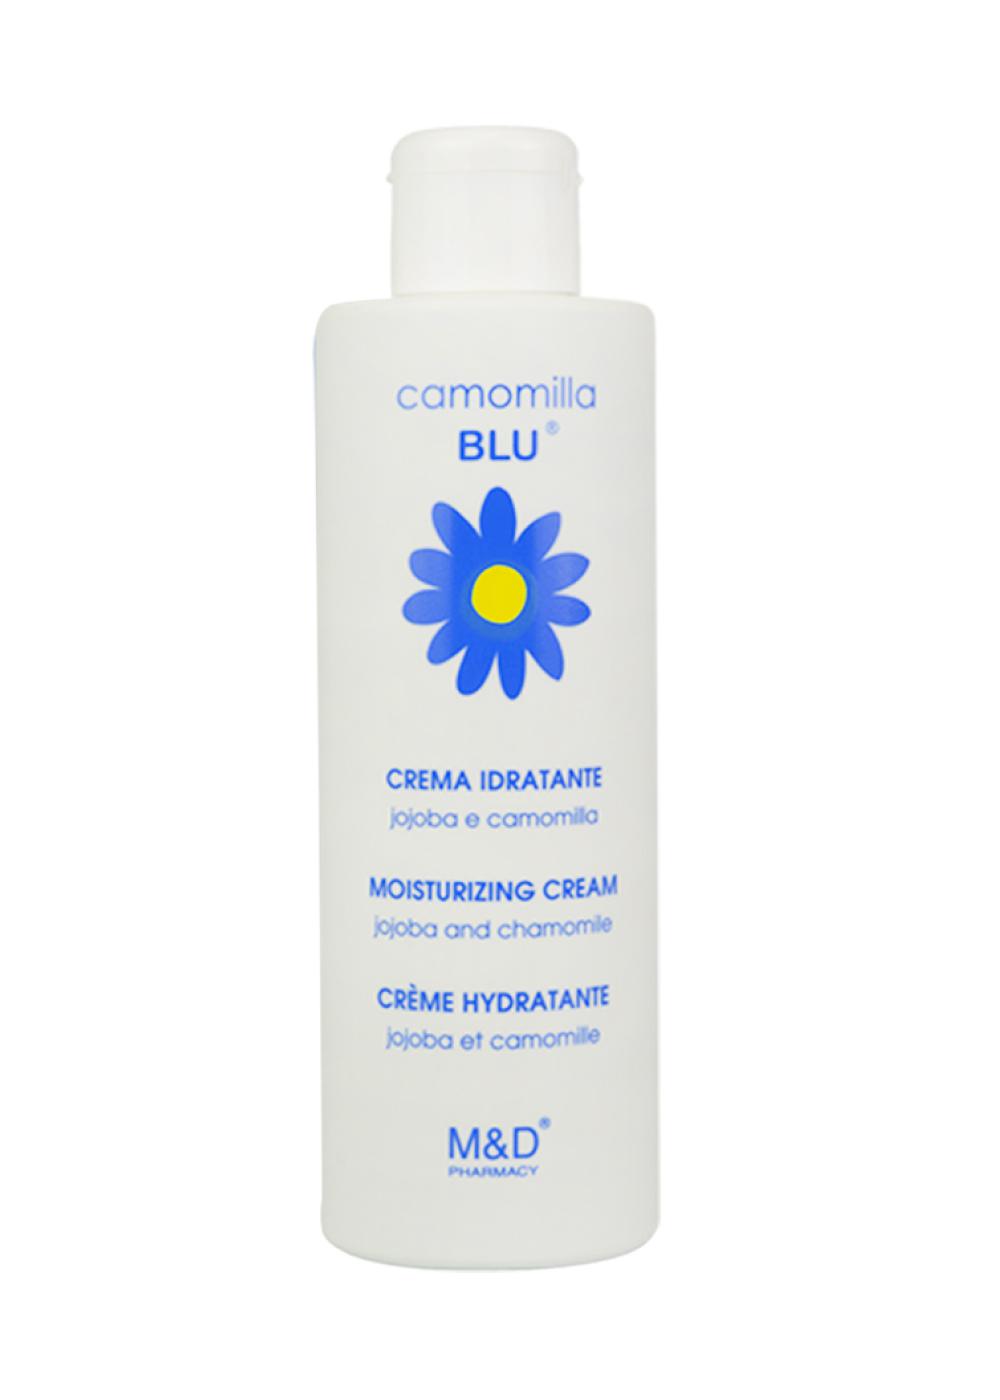 Увлажняющий крем для чувствительной кожи тела с маслом жожоба ромашкой Camomilla blu, 1051 руб. (&laquo;Рив Гош&raquo;)